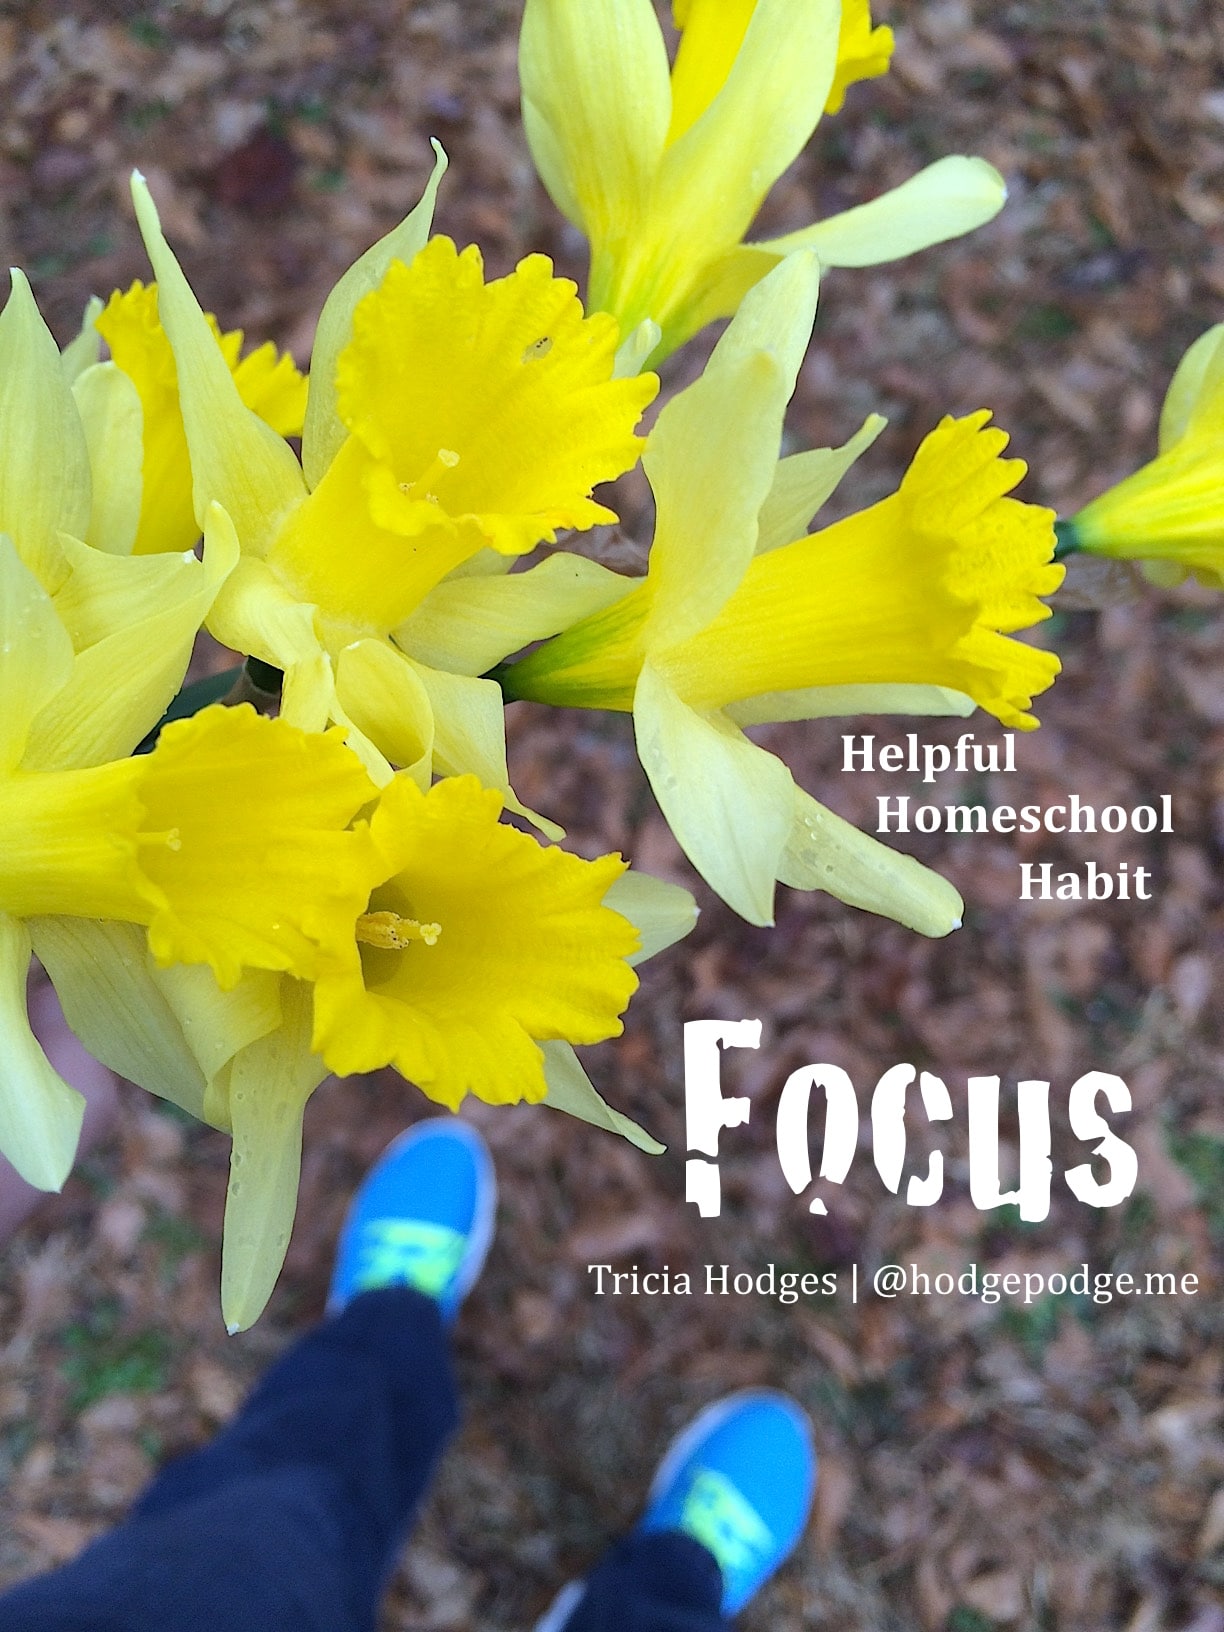 Helpful Homeschool Habit: Focus